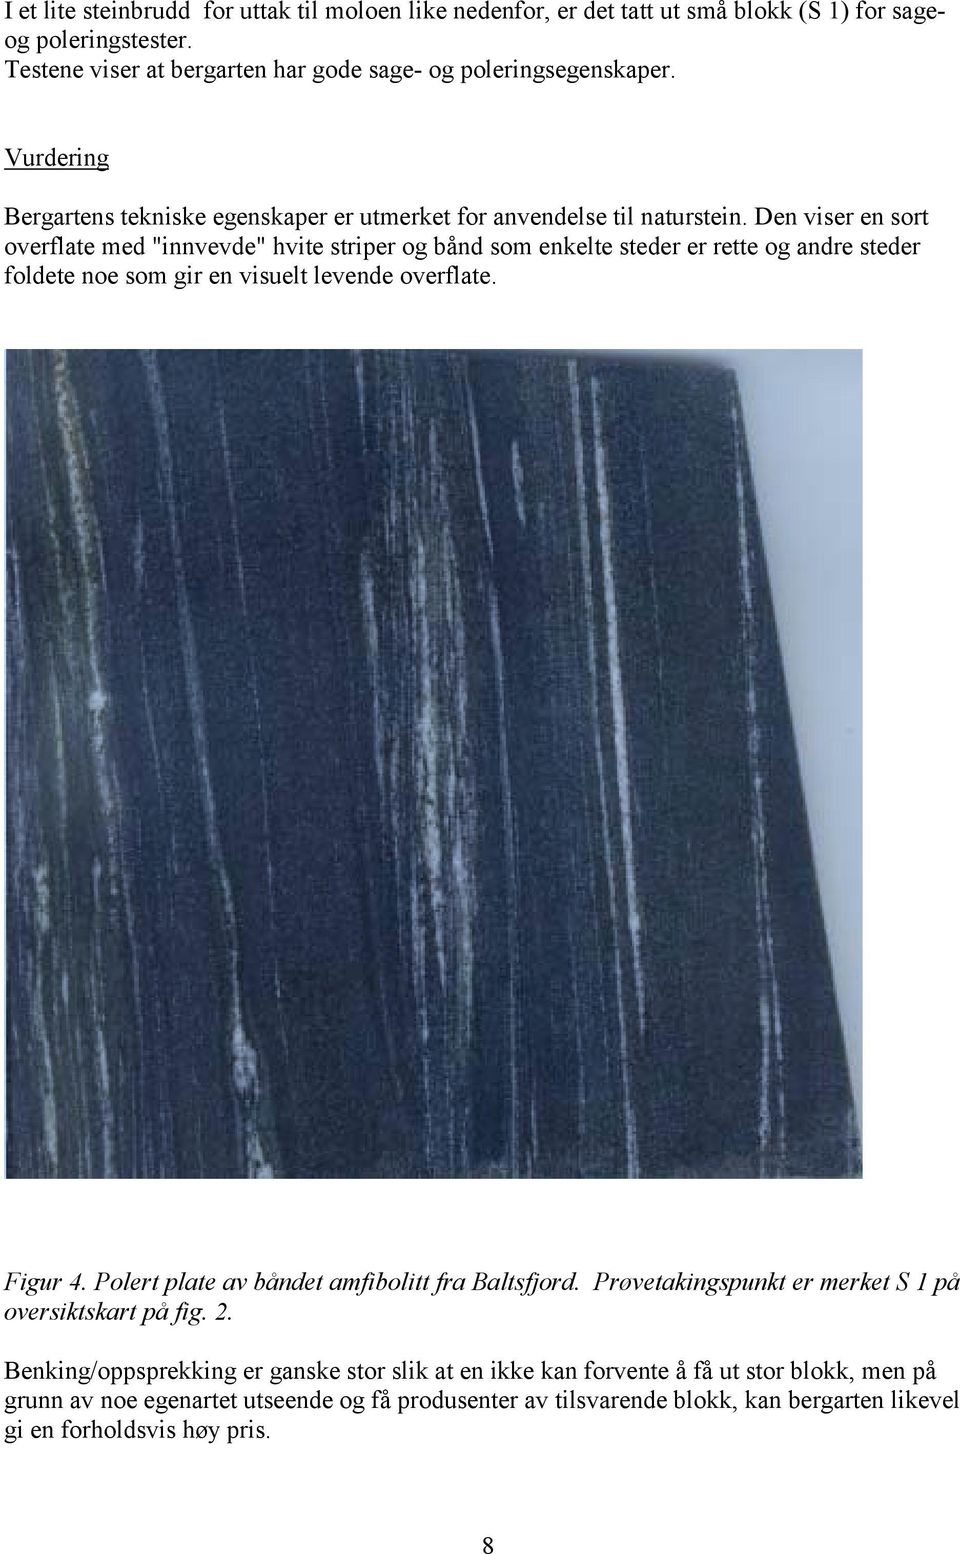 Den viser en sort overflate med "innvevde" hvite striper og bånd som enkelte steder er rette og andre steder foldete noe som gir en visuelt levende overflate. Figur 4.